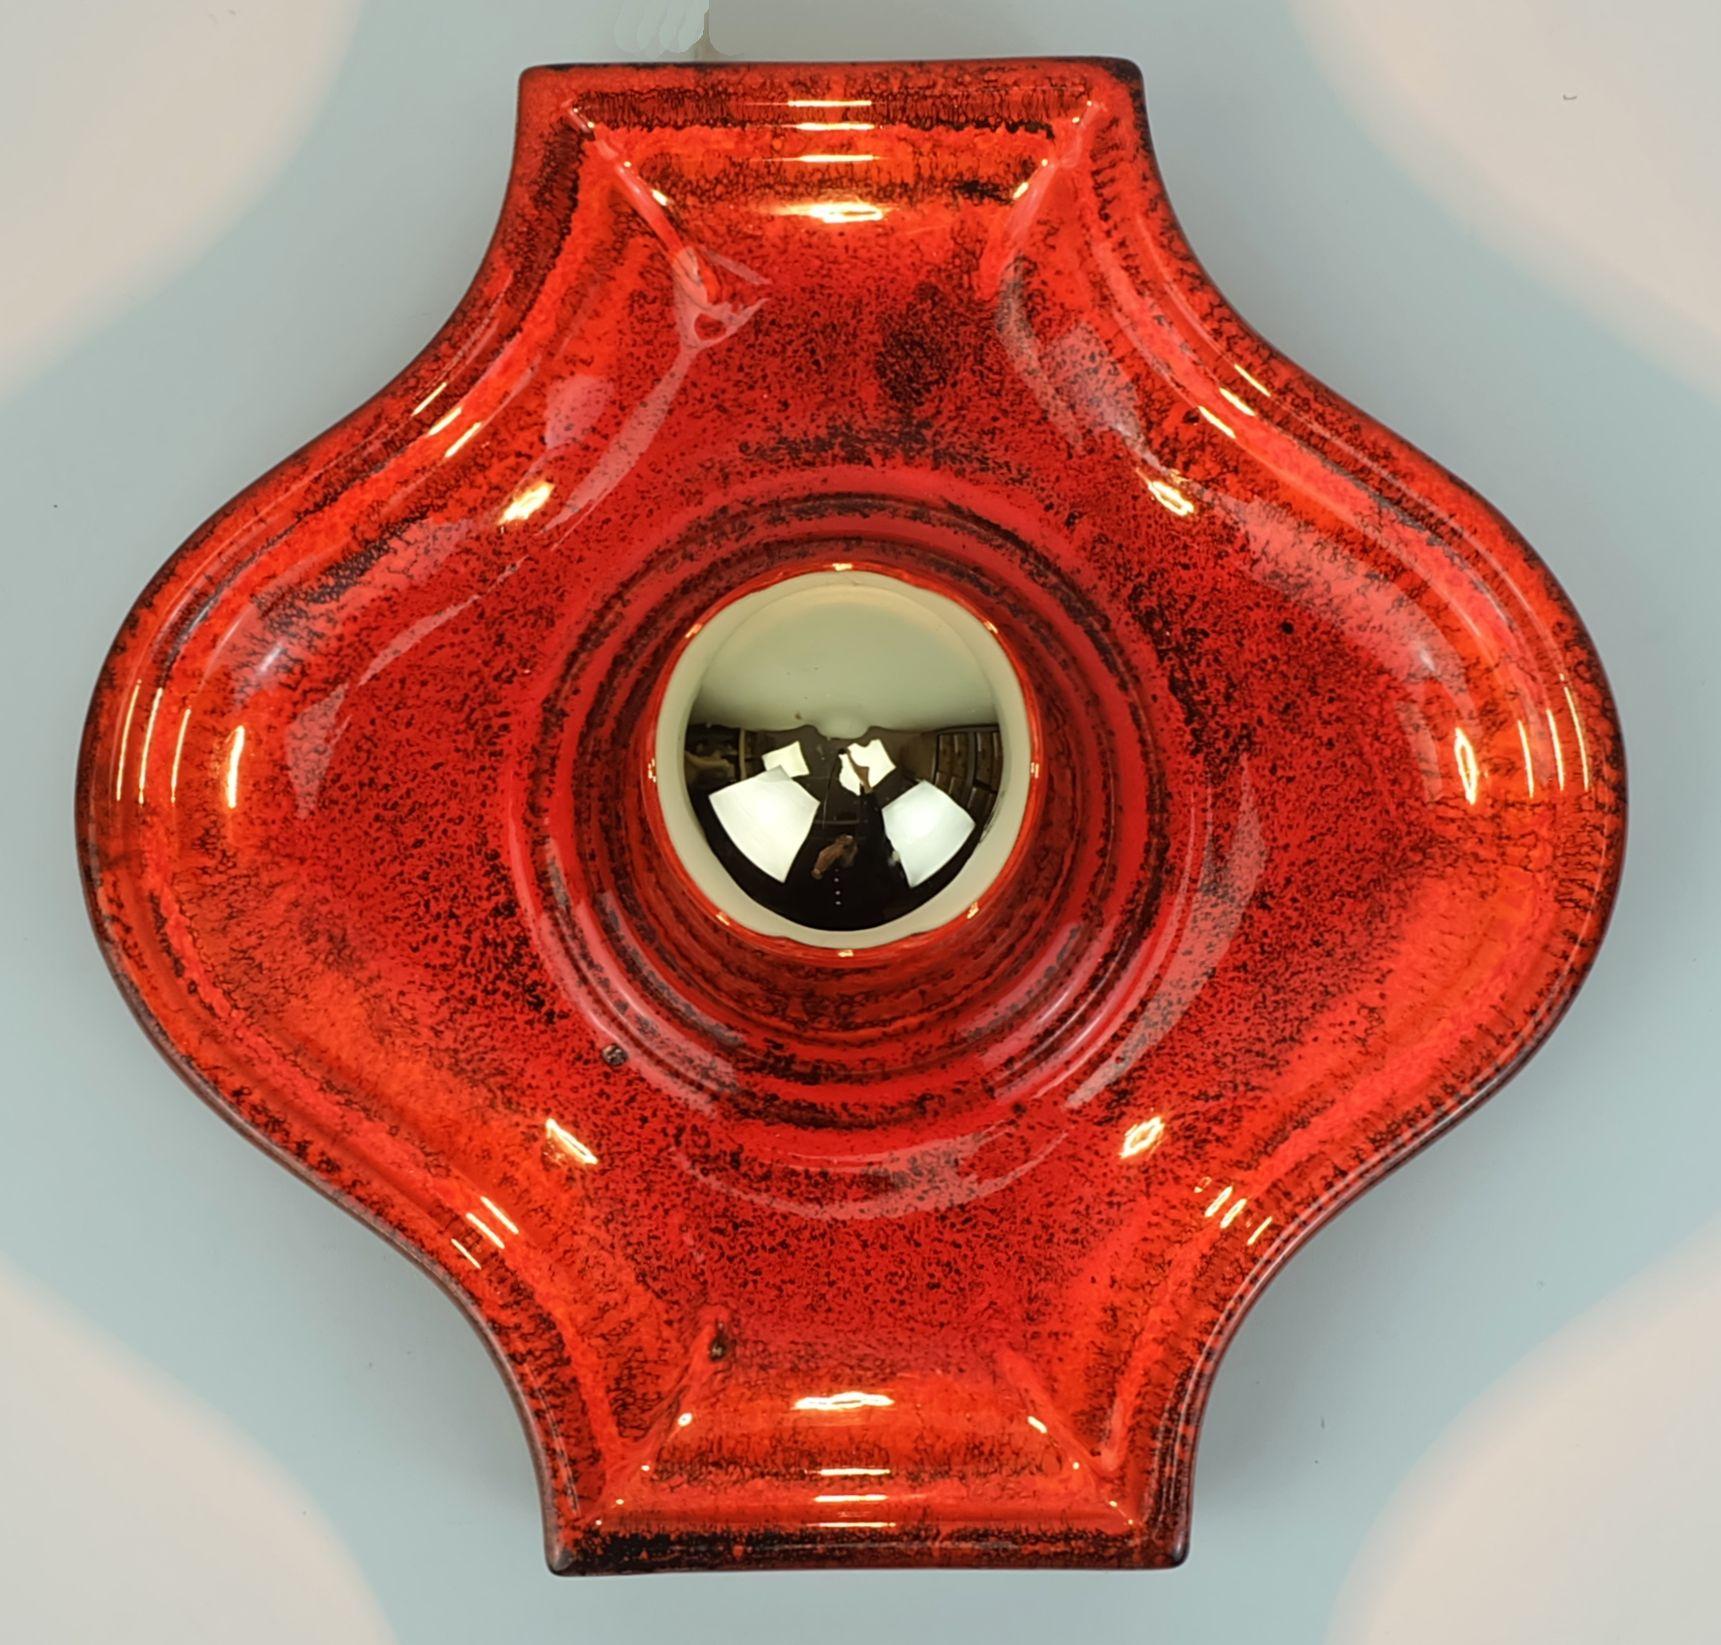 Applique en céramique du milieu du siècle, fabriquée entre la fin des années 1960 et le début des années 1970. Glaçure brillante en rouge, orange et noir. Contient 1 ampoule E27 (l'ampoule sur les photos n'est pas incluse dans le prix de l'article).